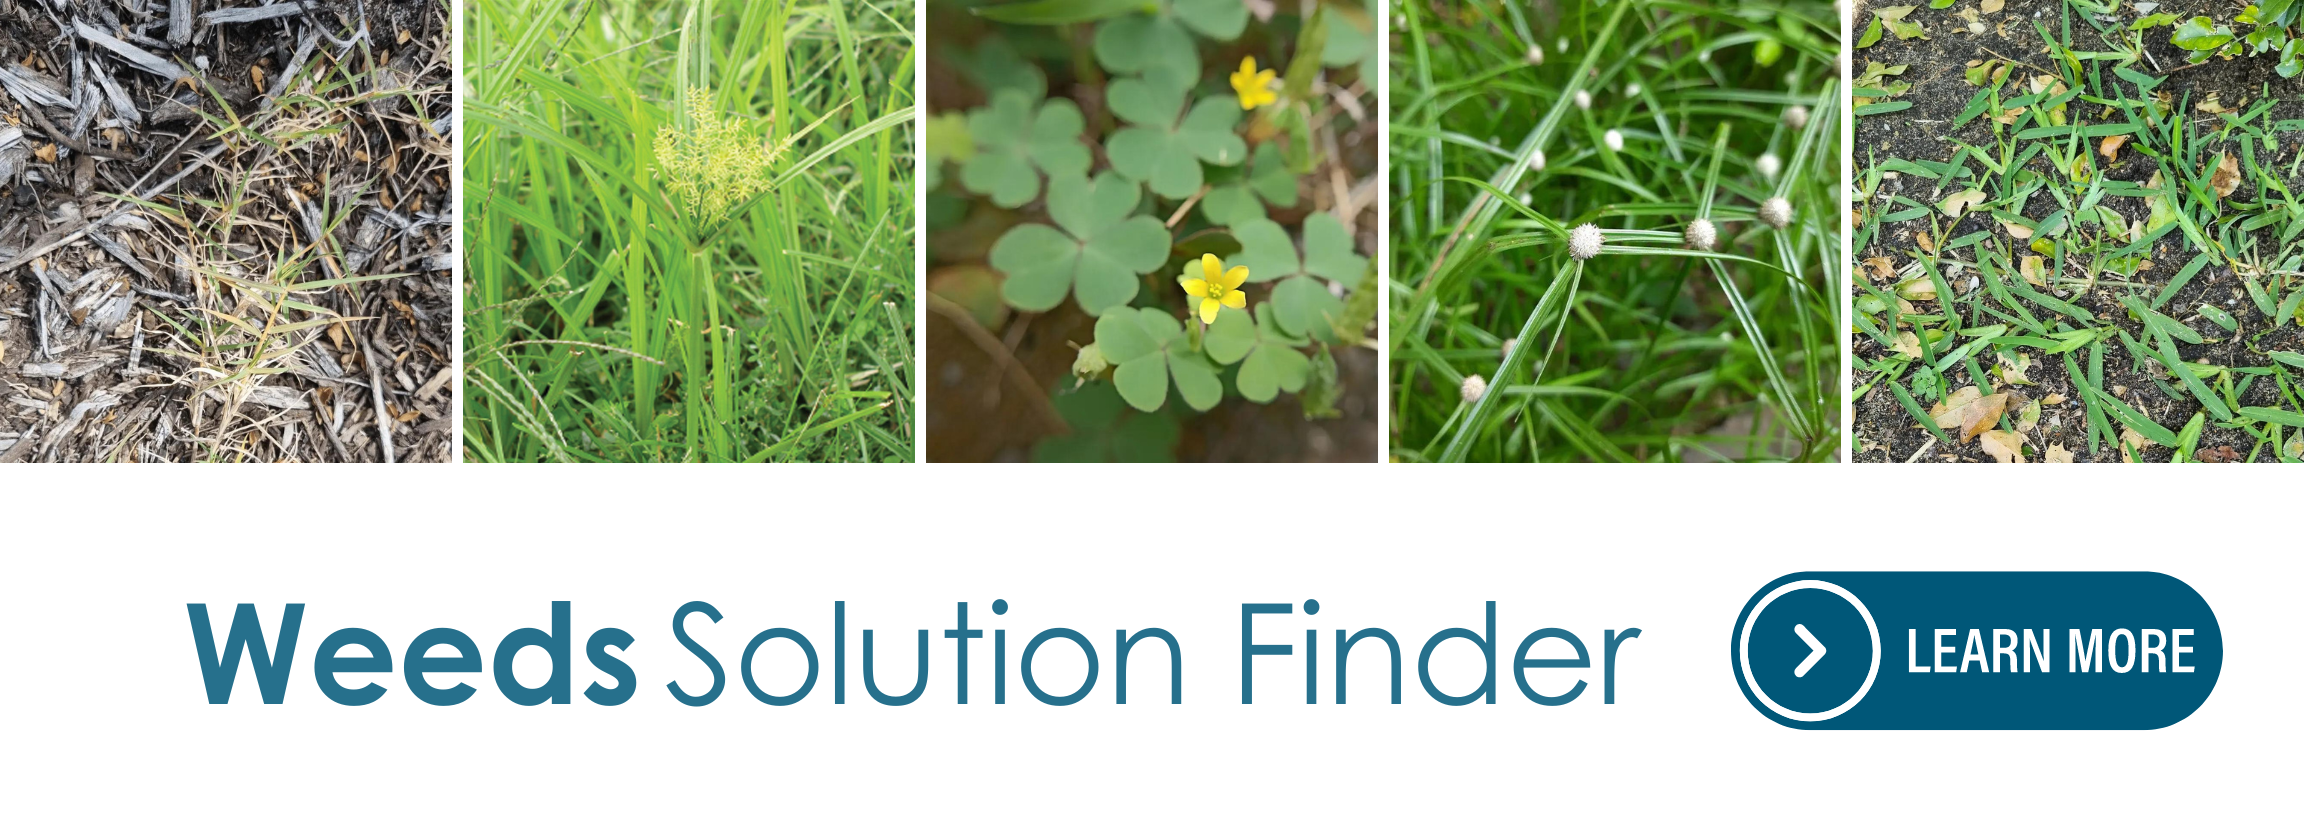 StrataGreen Weeds Solution Finder